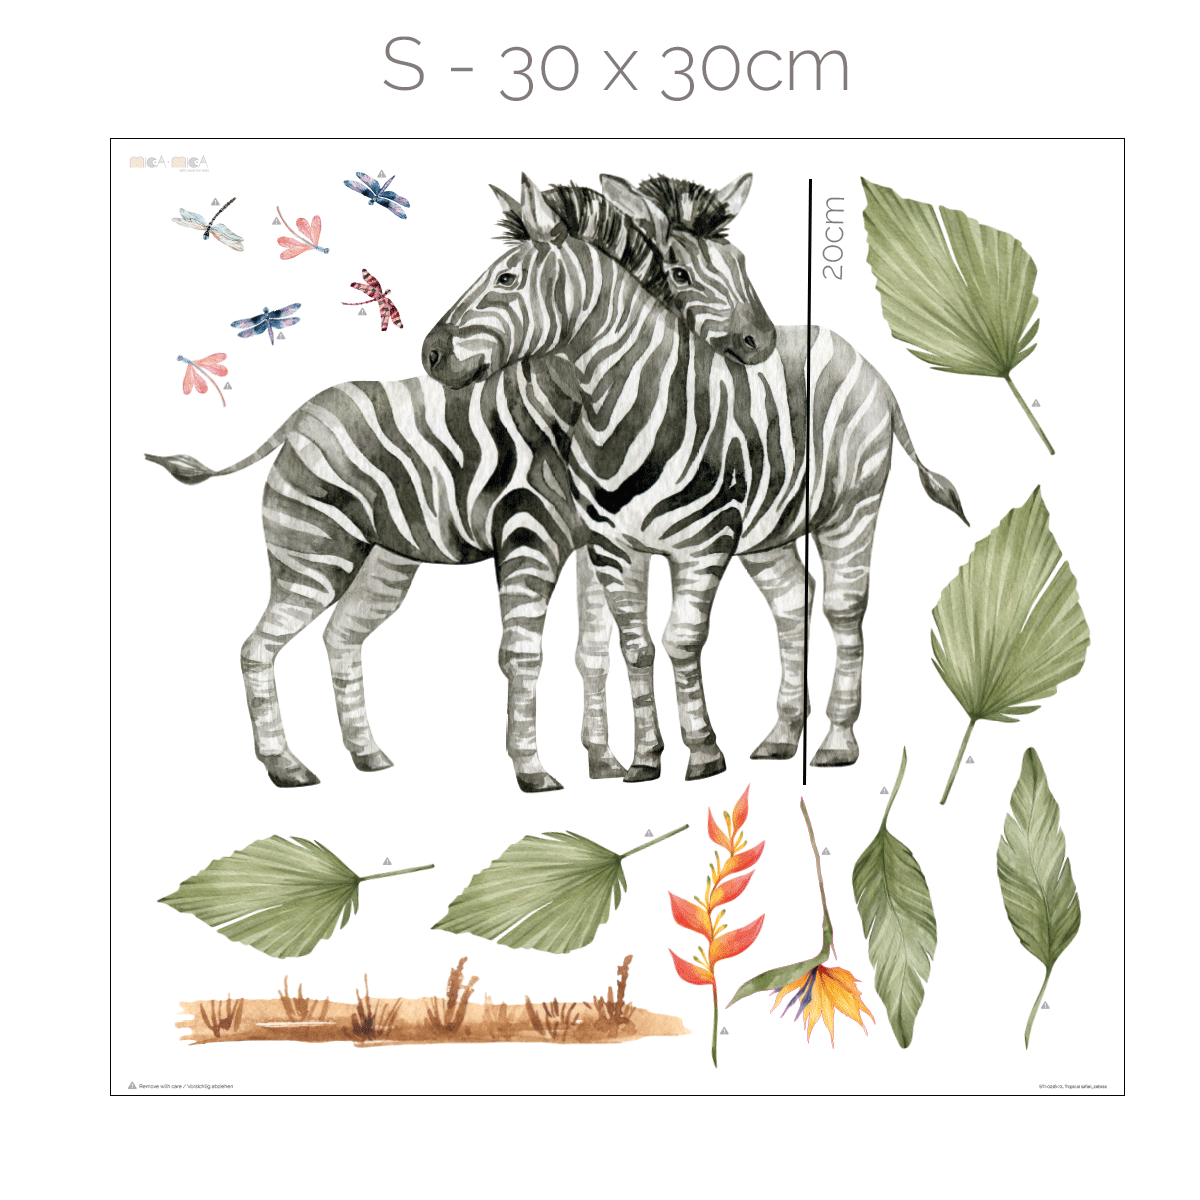 Jungle wall stickers - Tropical safari - zebras